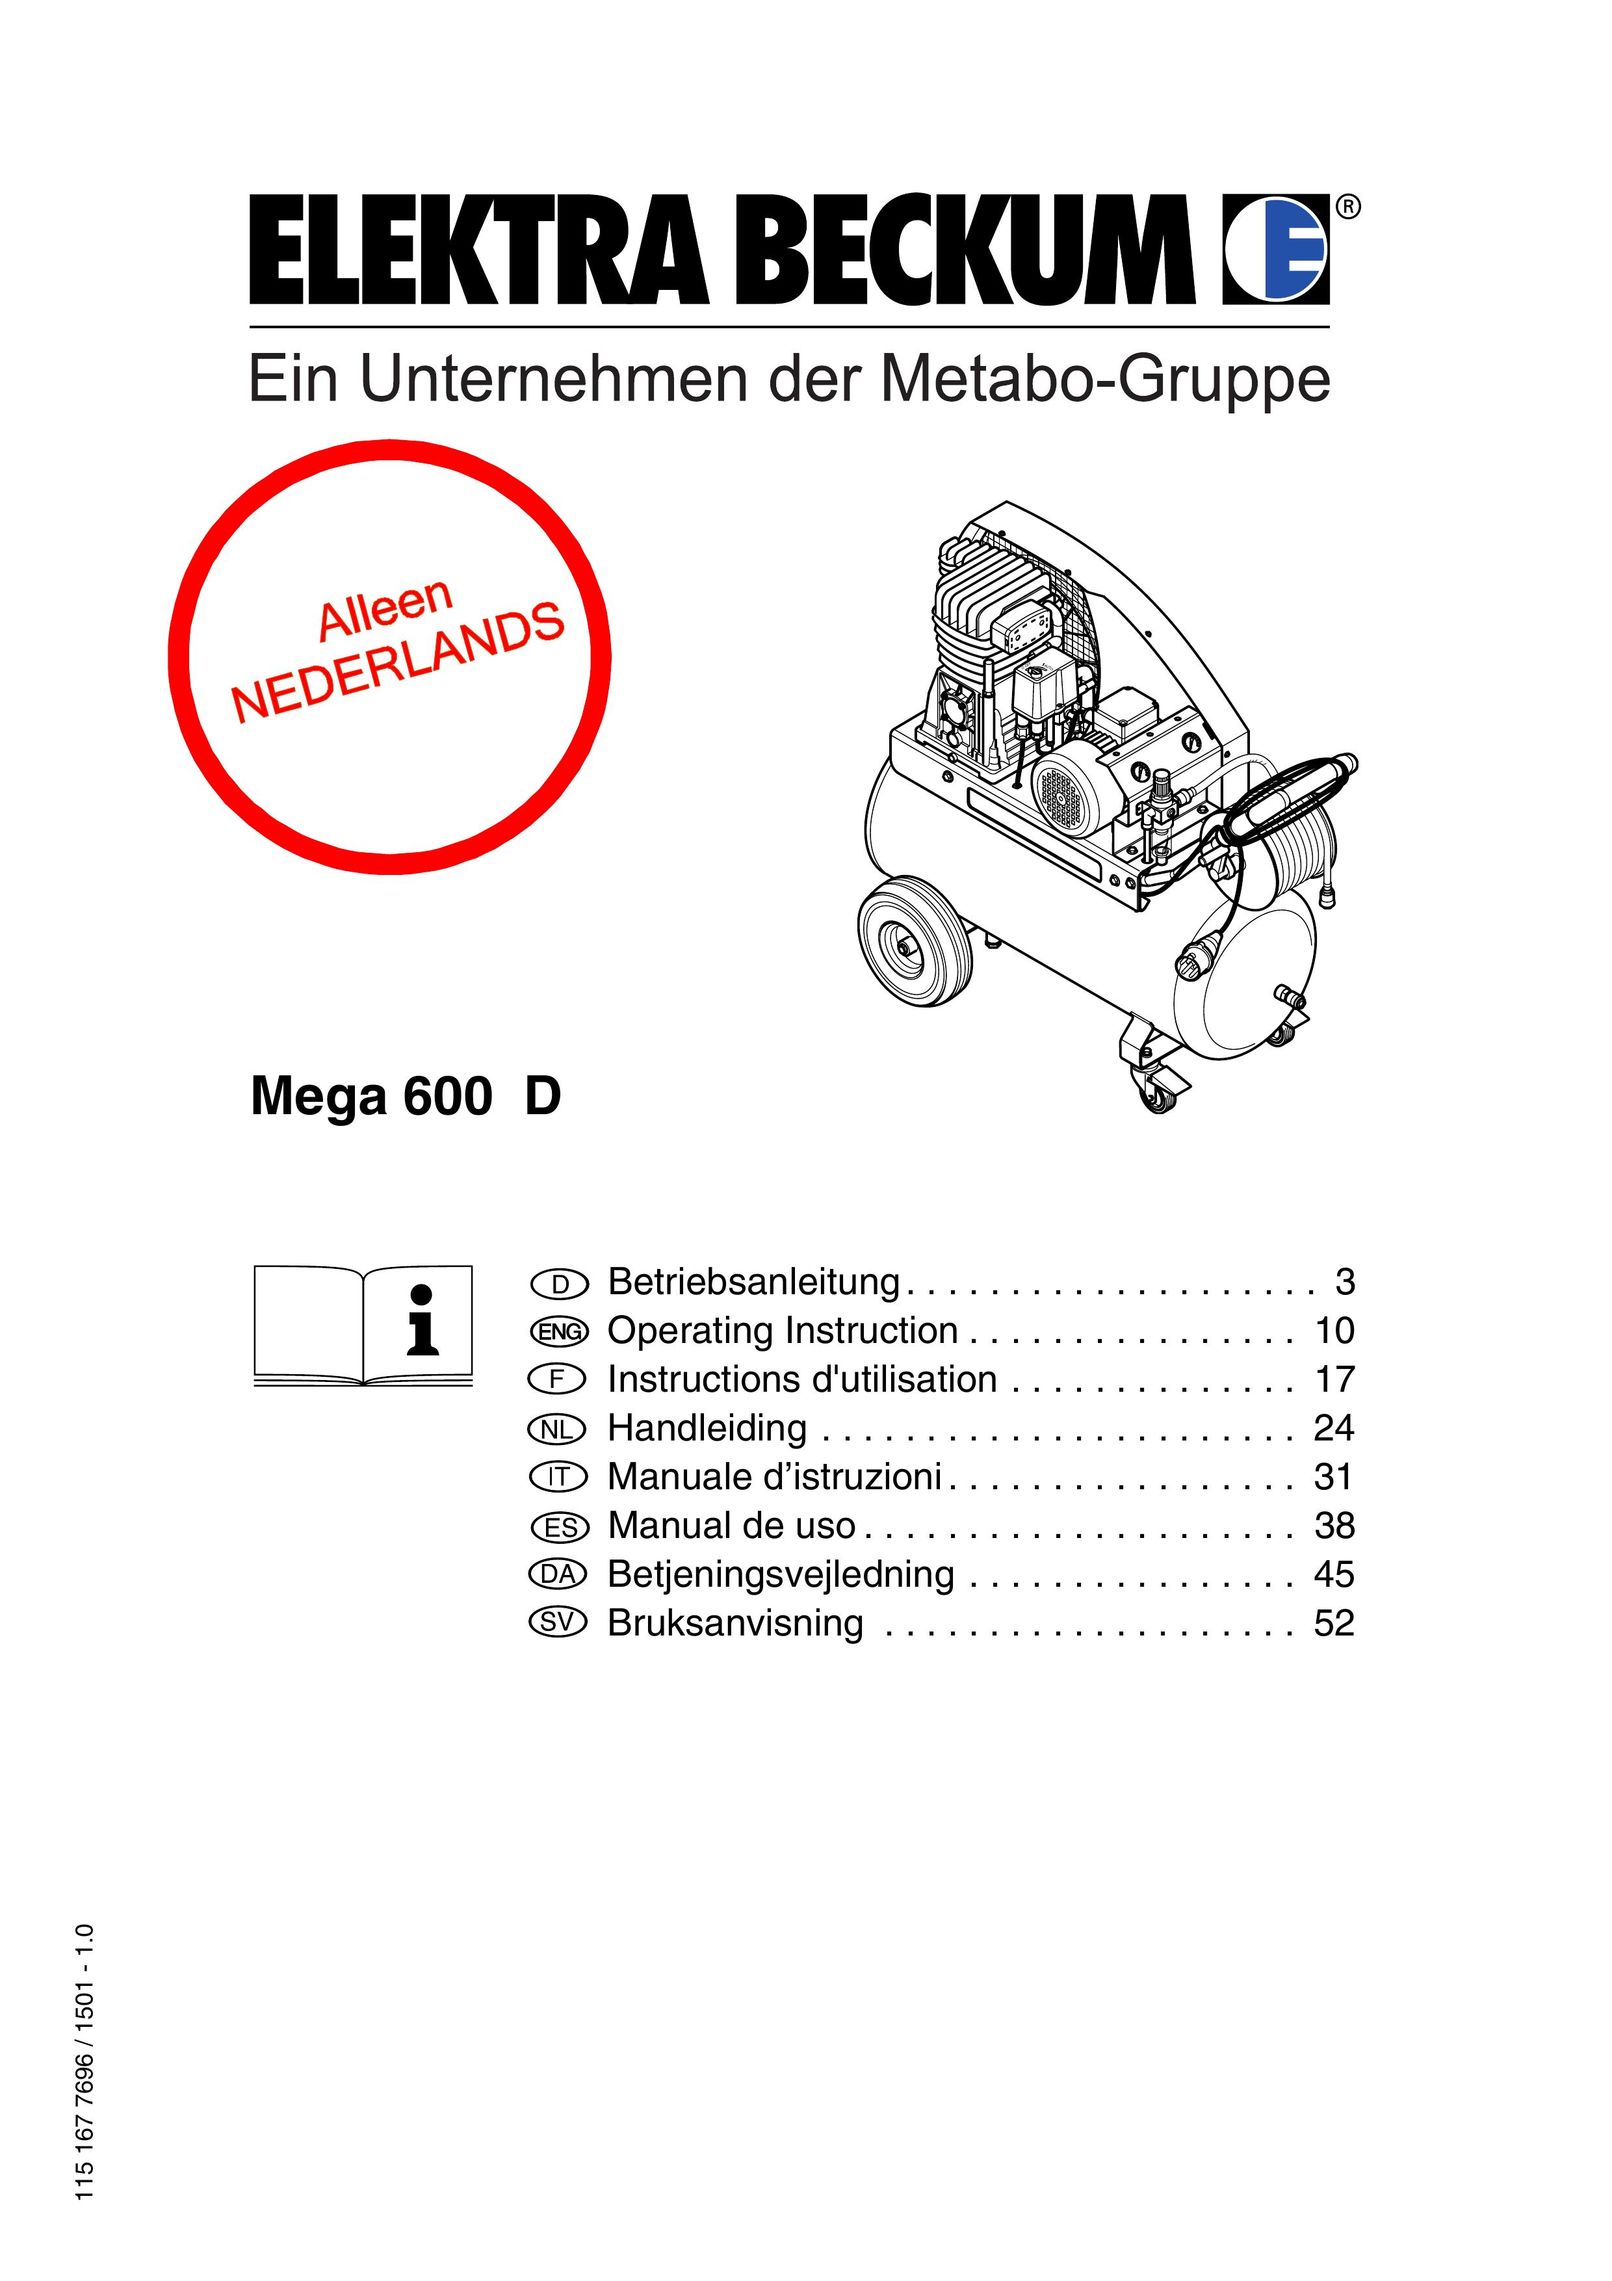 Elektra Beckum Mega 600 D Air Compressor User Manual